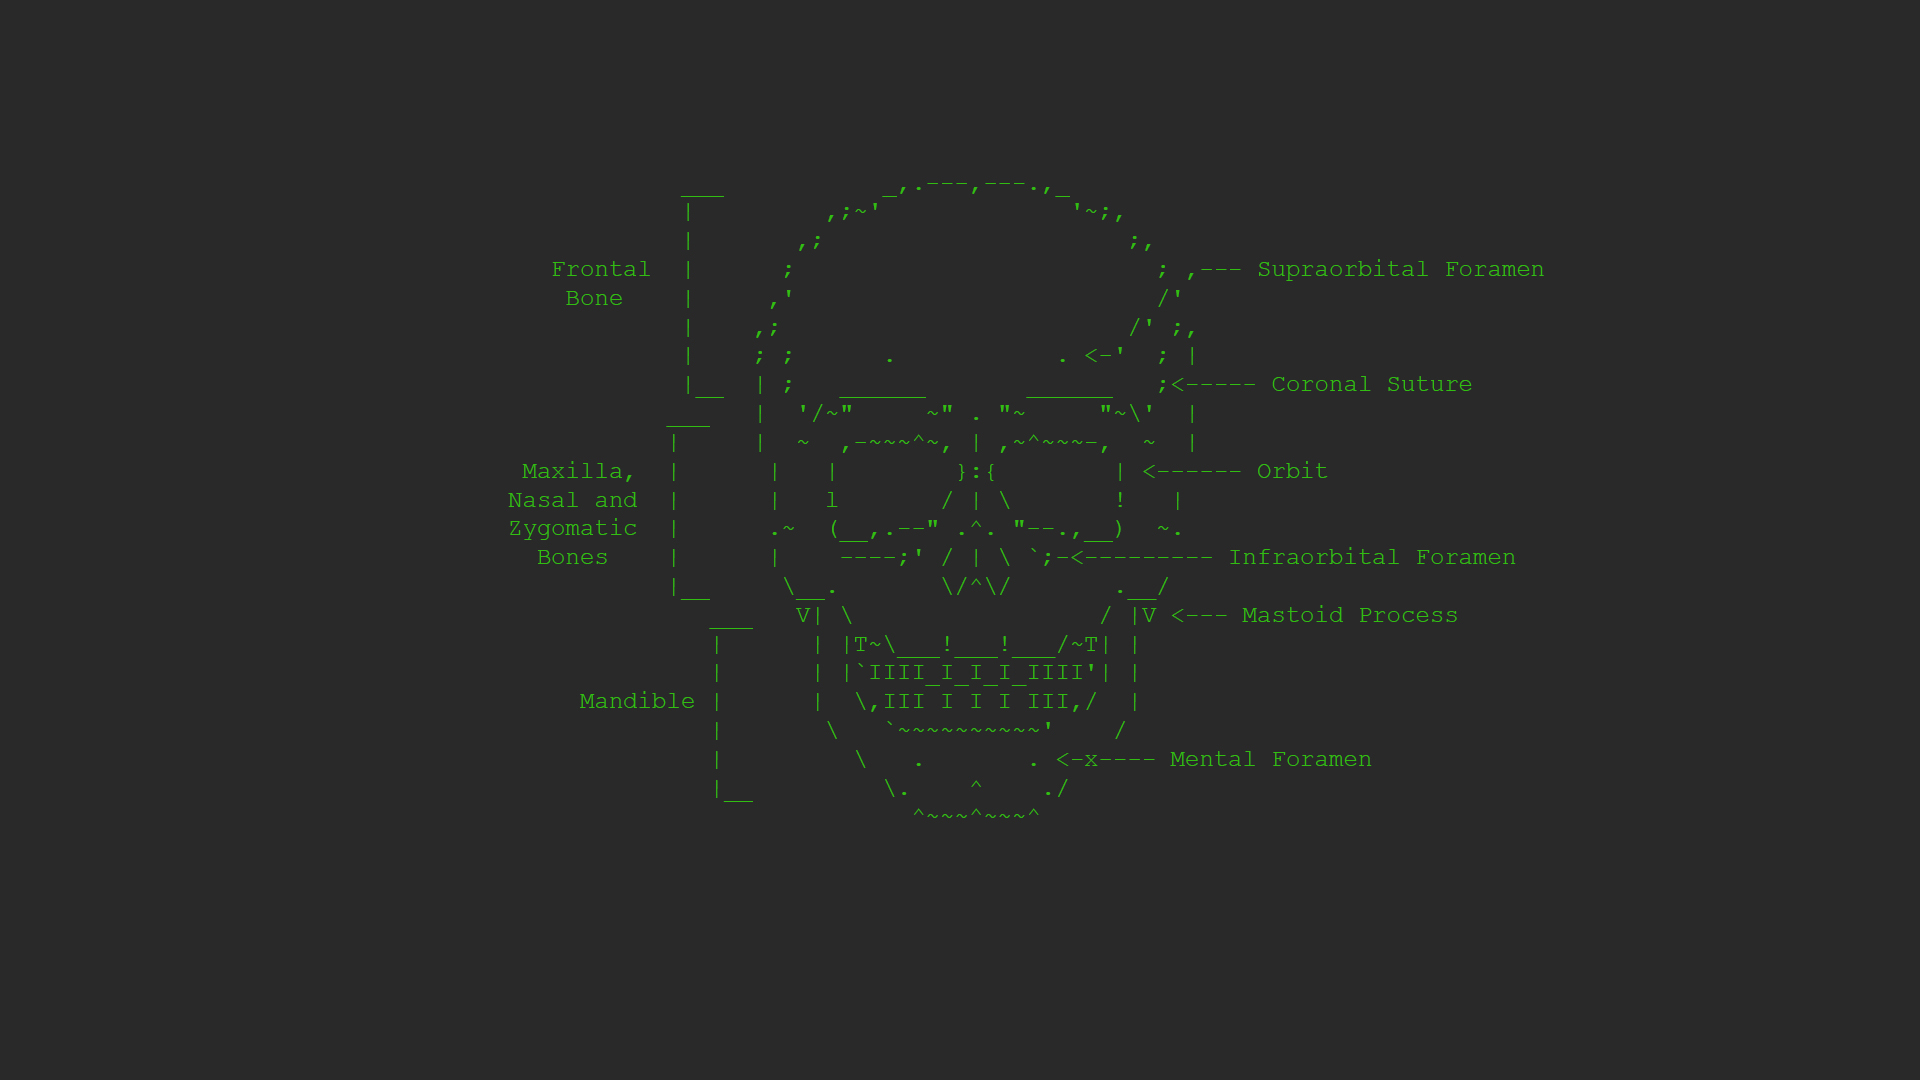 General 1920x1080 ASCII art skull minimalism